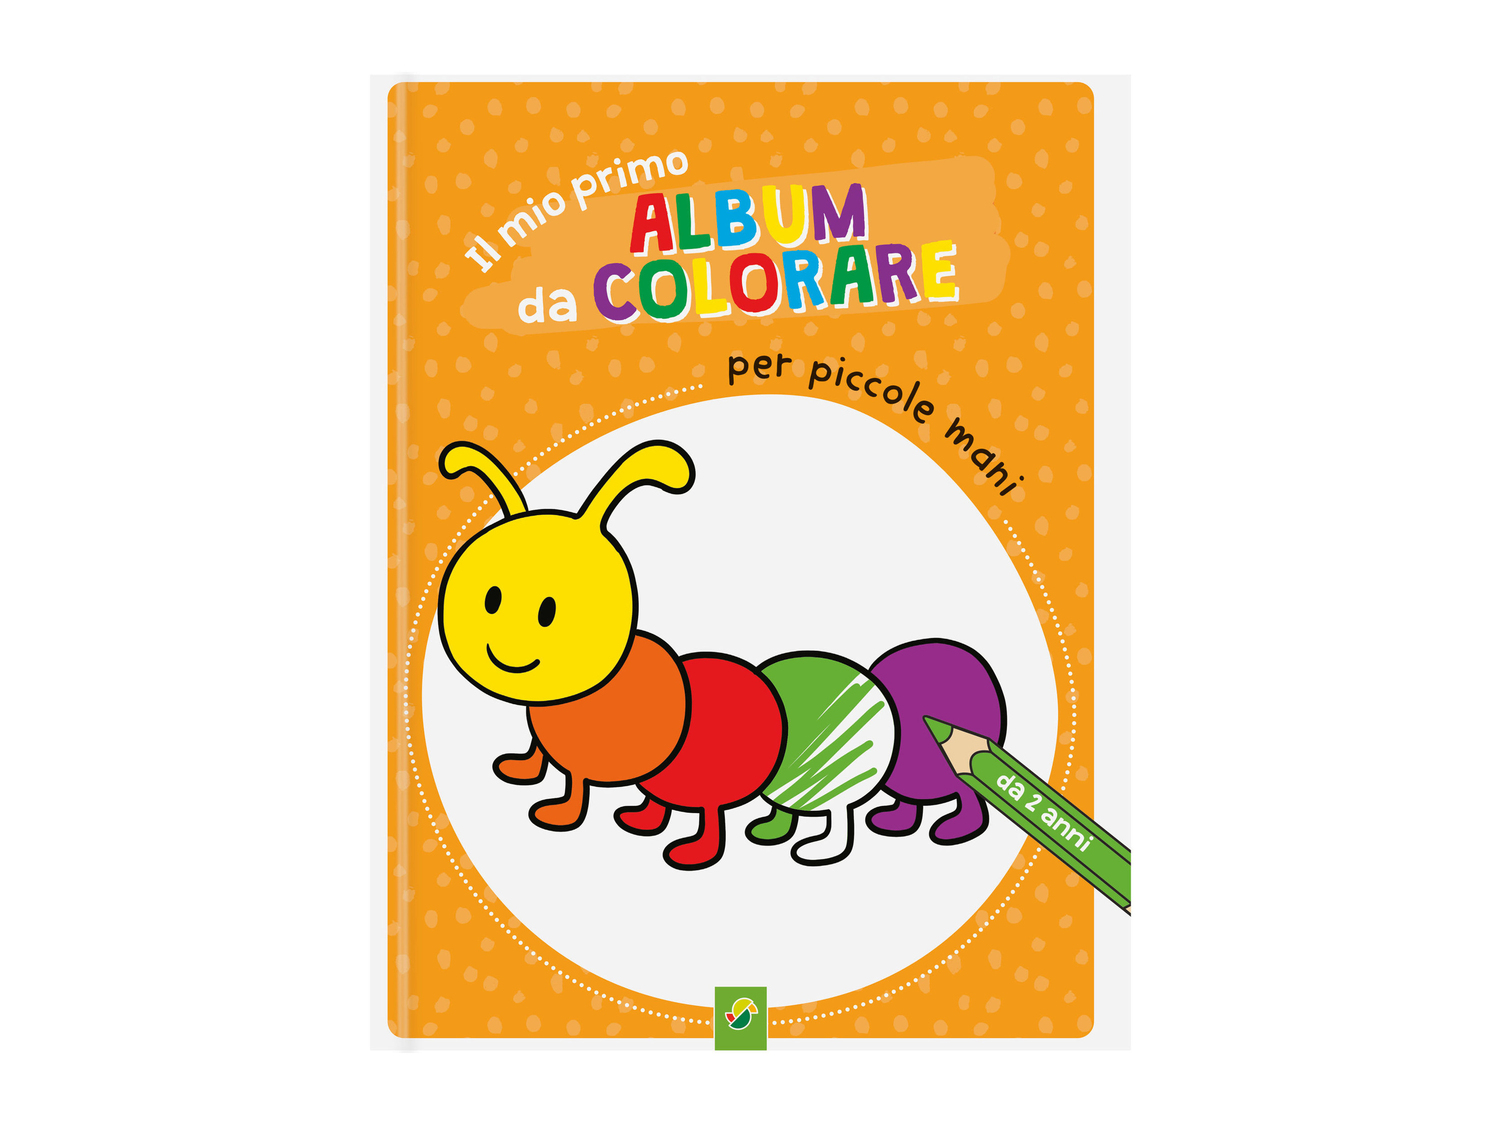 Libro di attività per bambini , prezzo 4.99 &#8364; 
- Per disegnare/colorare, ...